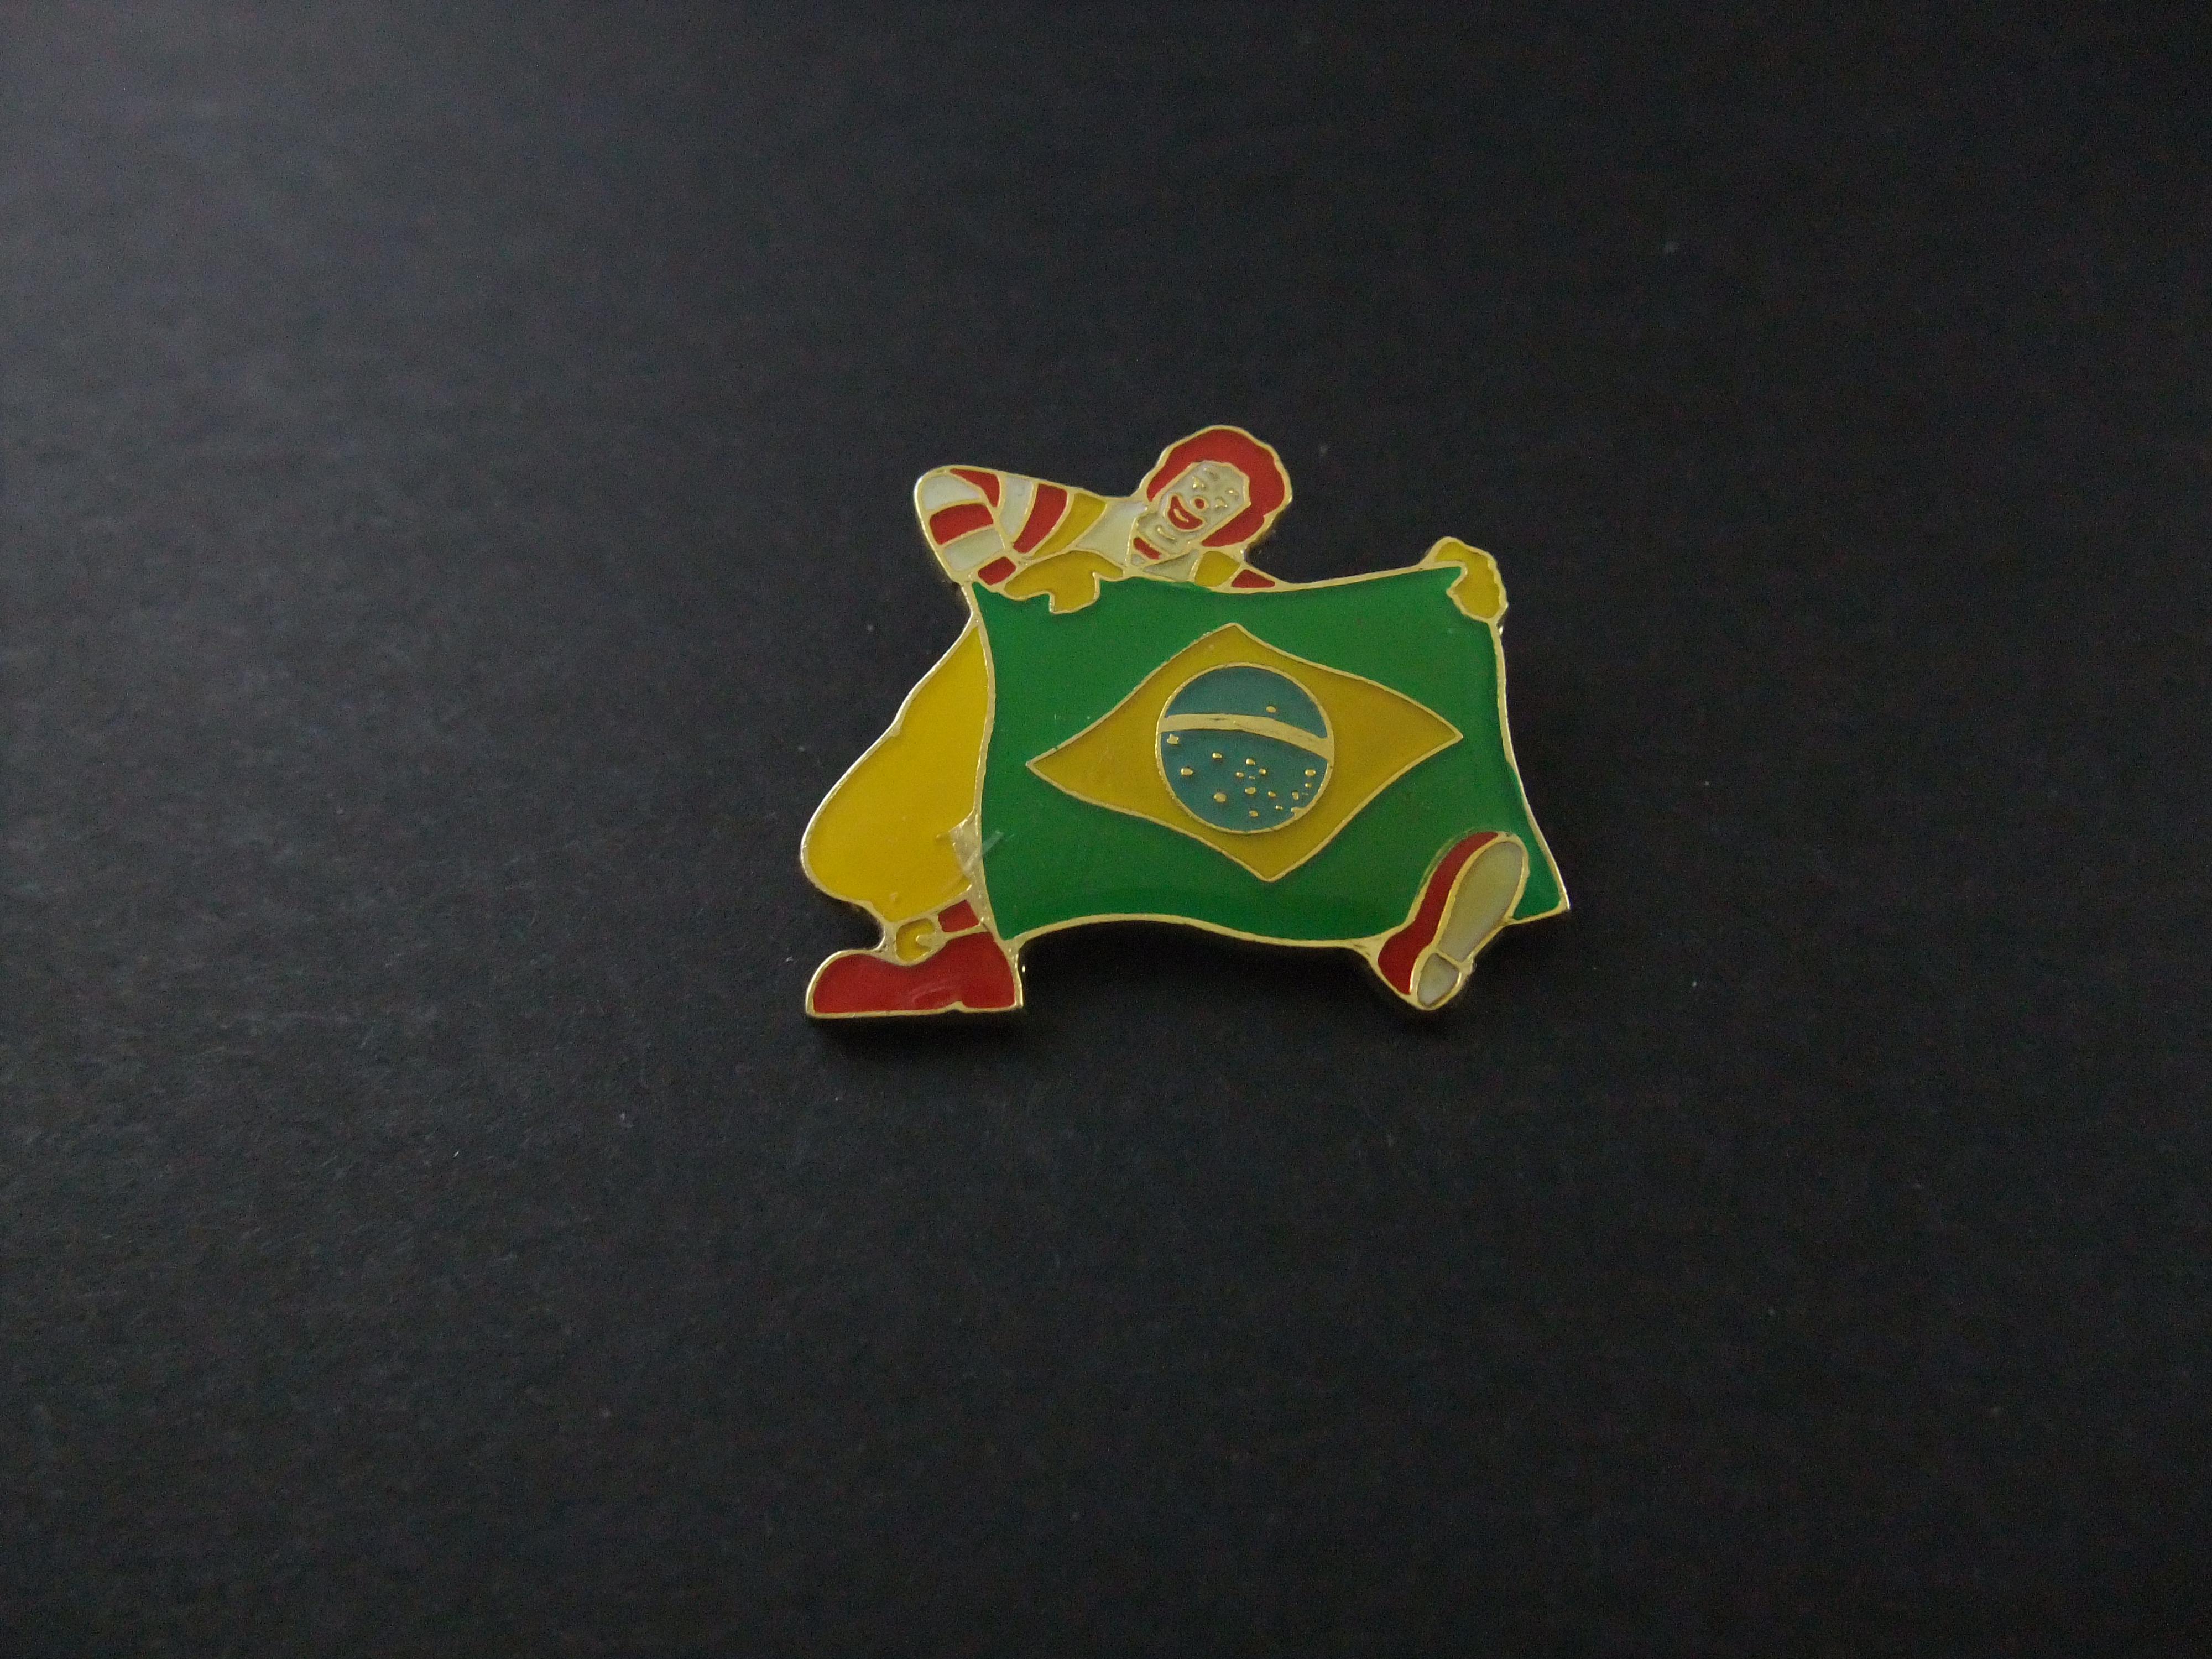 McDonalds Brazilië met de Braziliaanse vlag